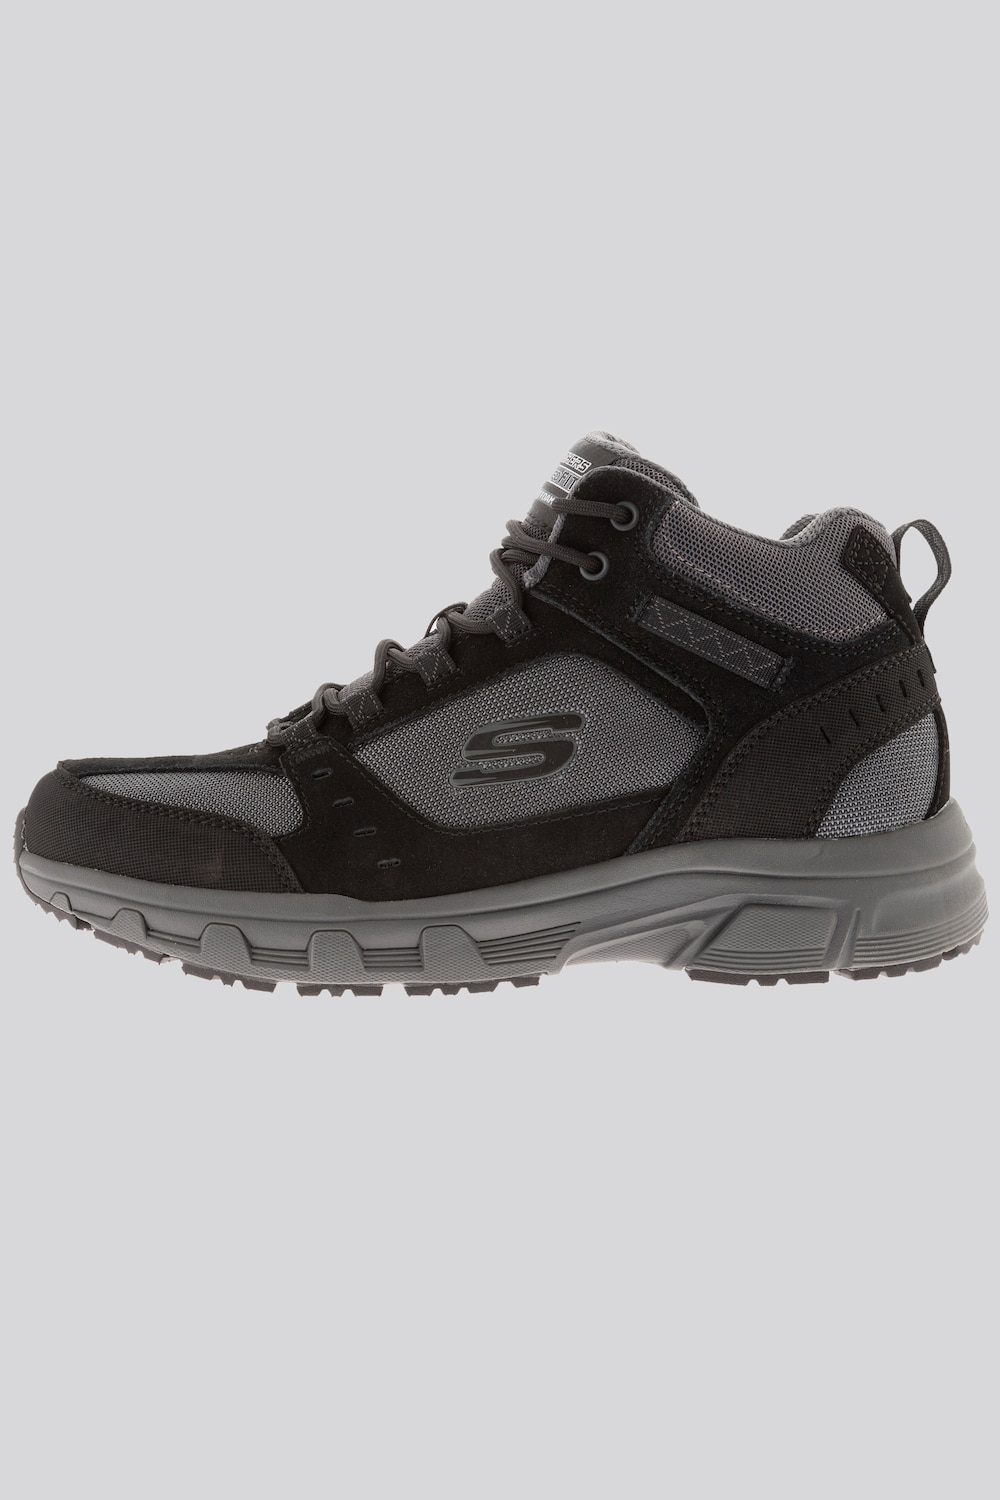 Herren-Boots, Herren, schwarz, Größe: 45, Leder/Synthetische Fasern/Polyester, JP1880